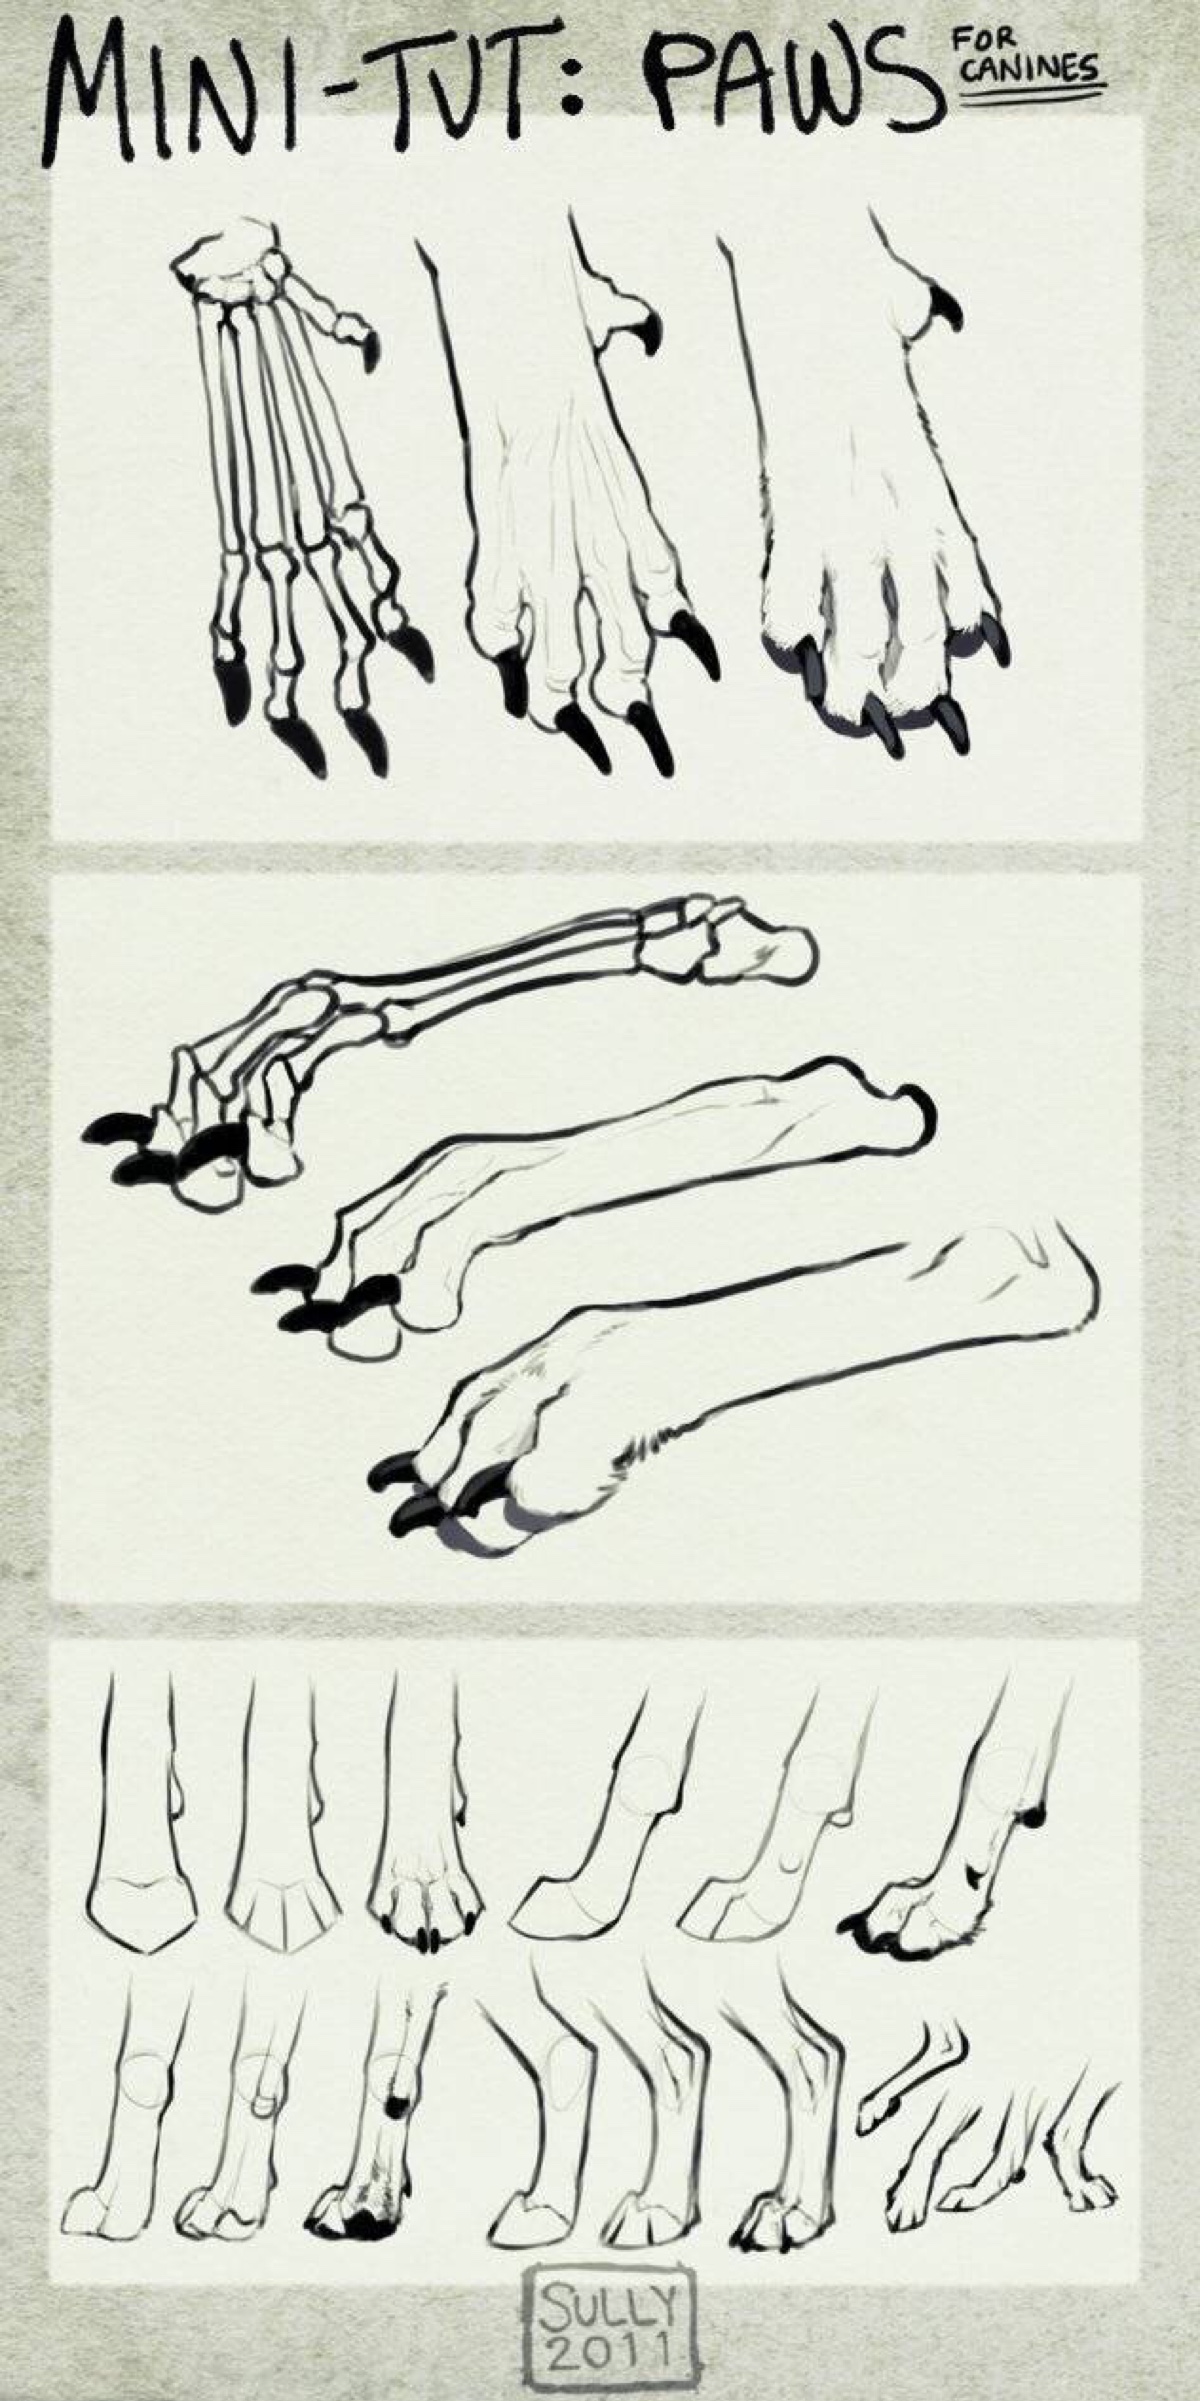 猫爪结构图图片